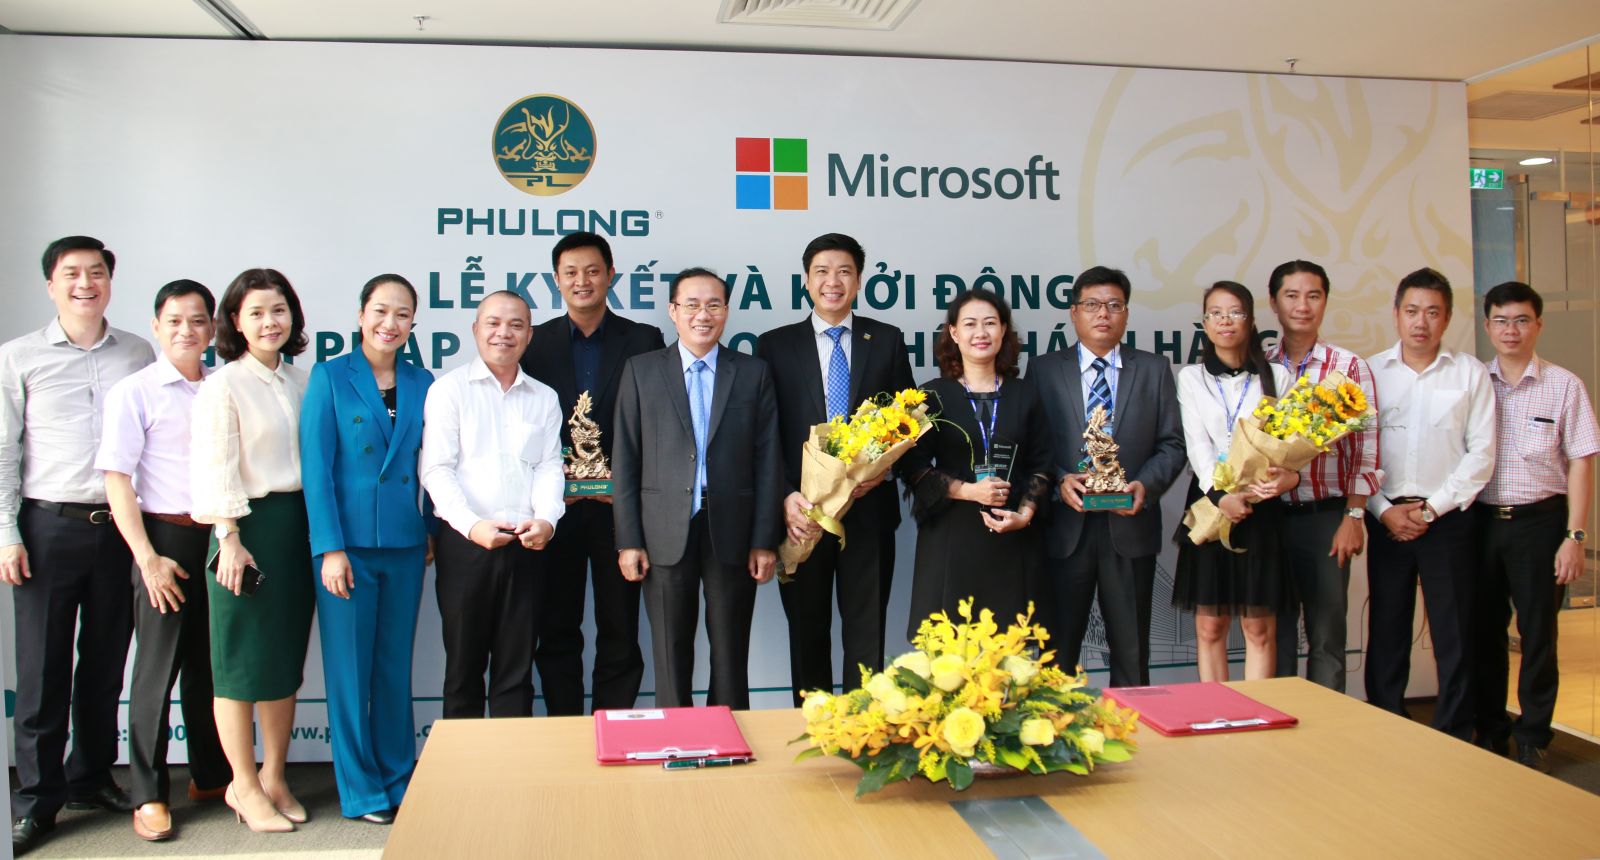 Lãnh đạo Phú Long và Microsoft Việt Nam chụp ảnh lưu niệm